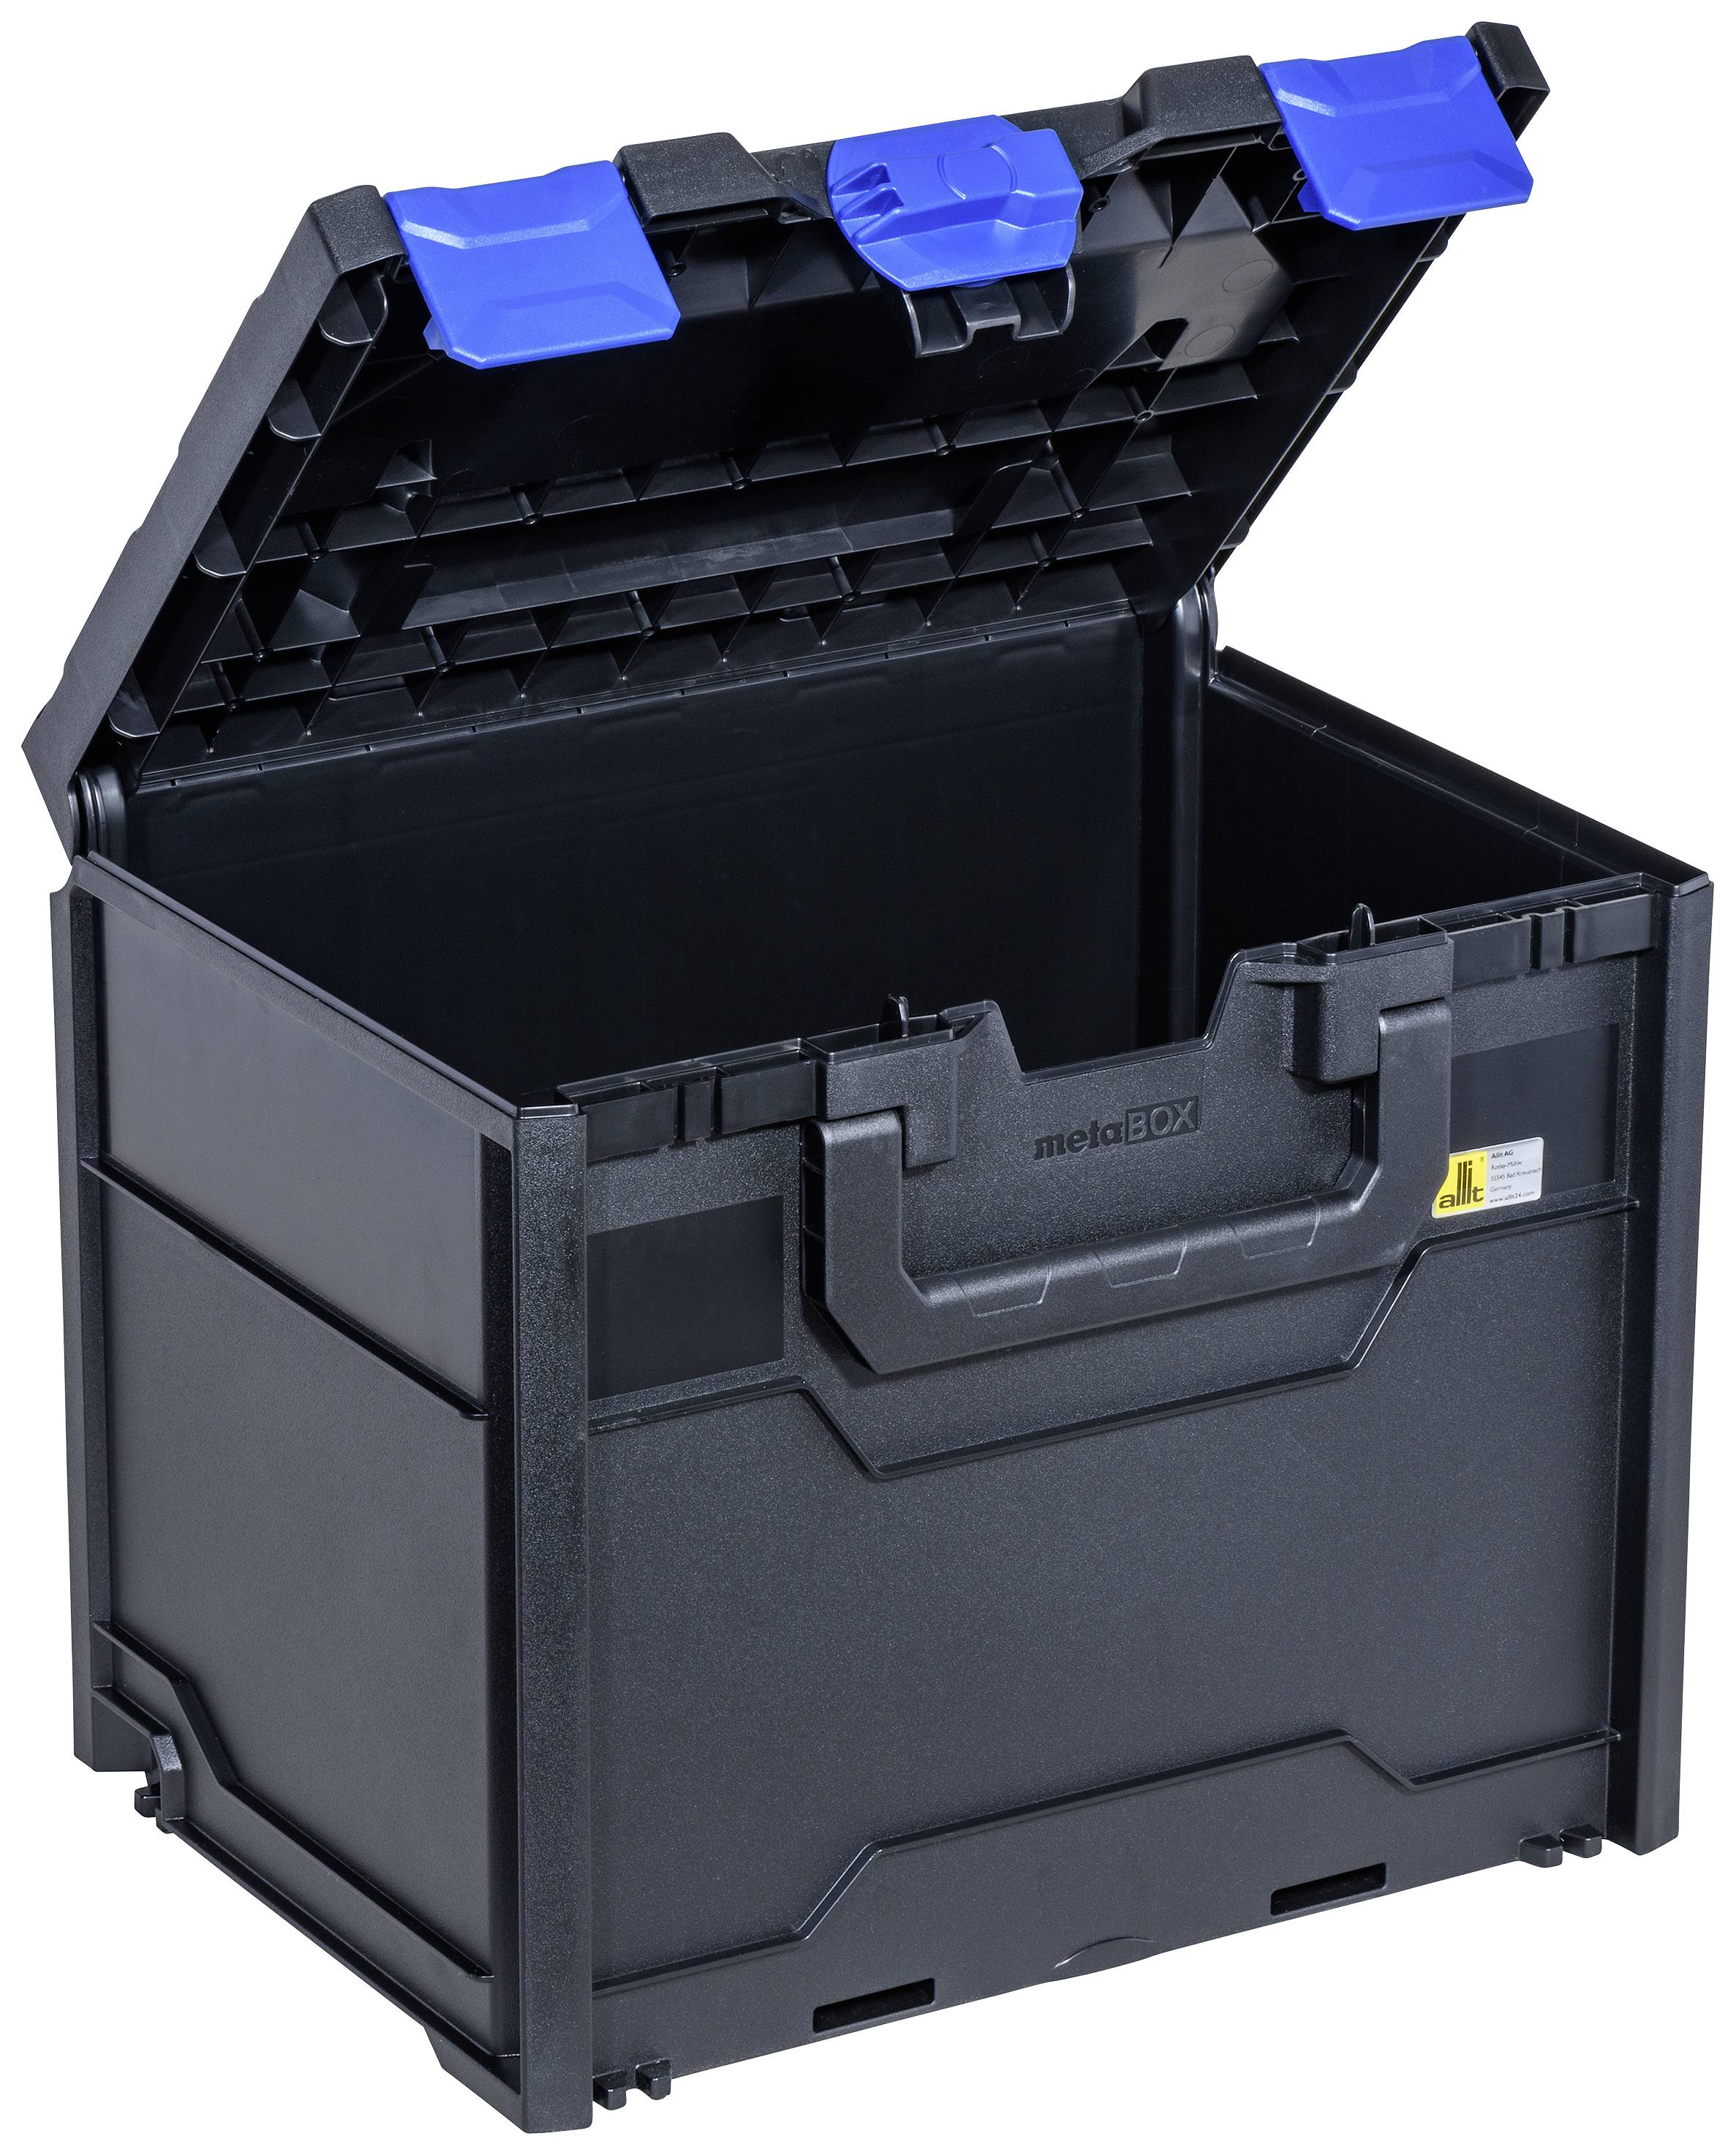 allit Aufbewahrungsbox EuroPlus MetaBox 340, schwarz/blau aus ABS-Kunststoff, sicheres Kopplungssyst